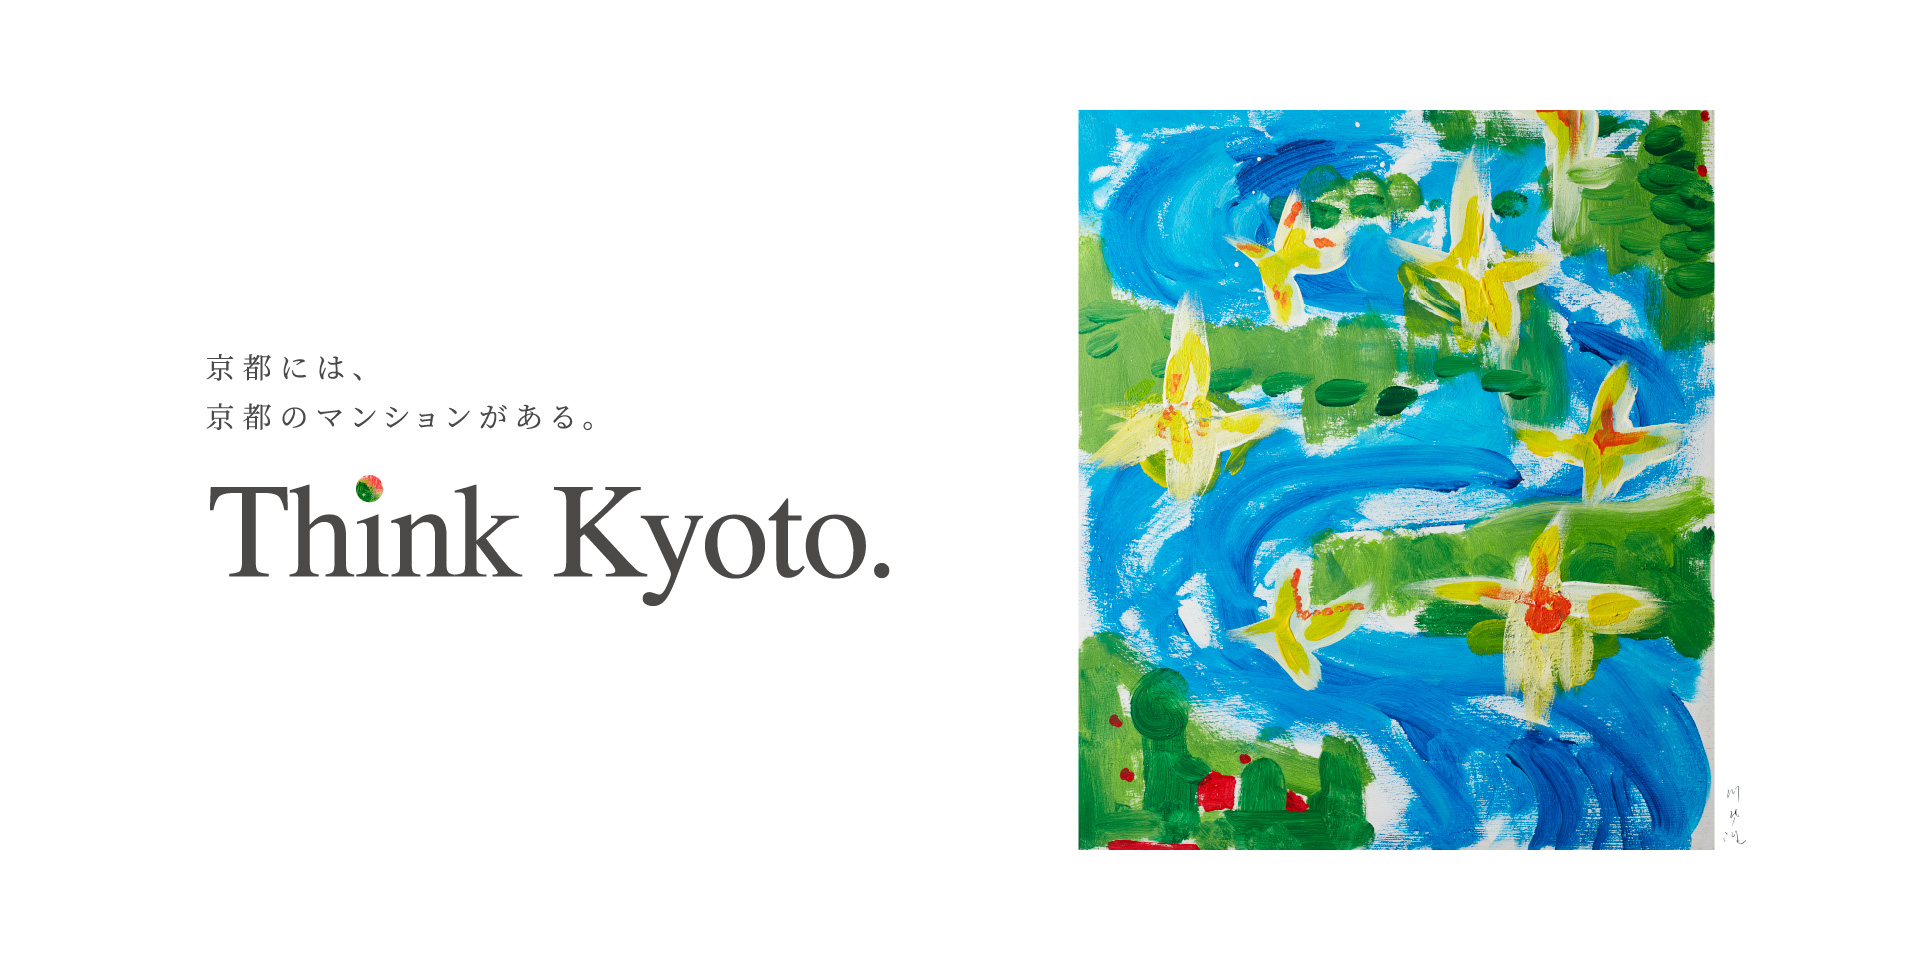 京都には、京都のマンションがある。Think Kyoto.